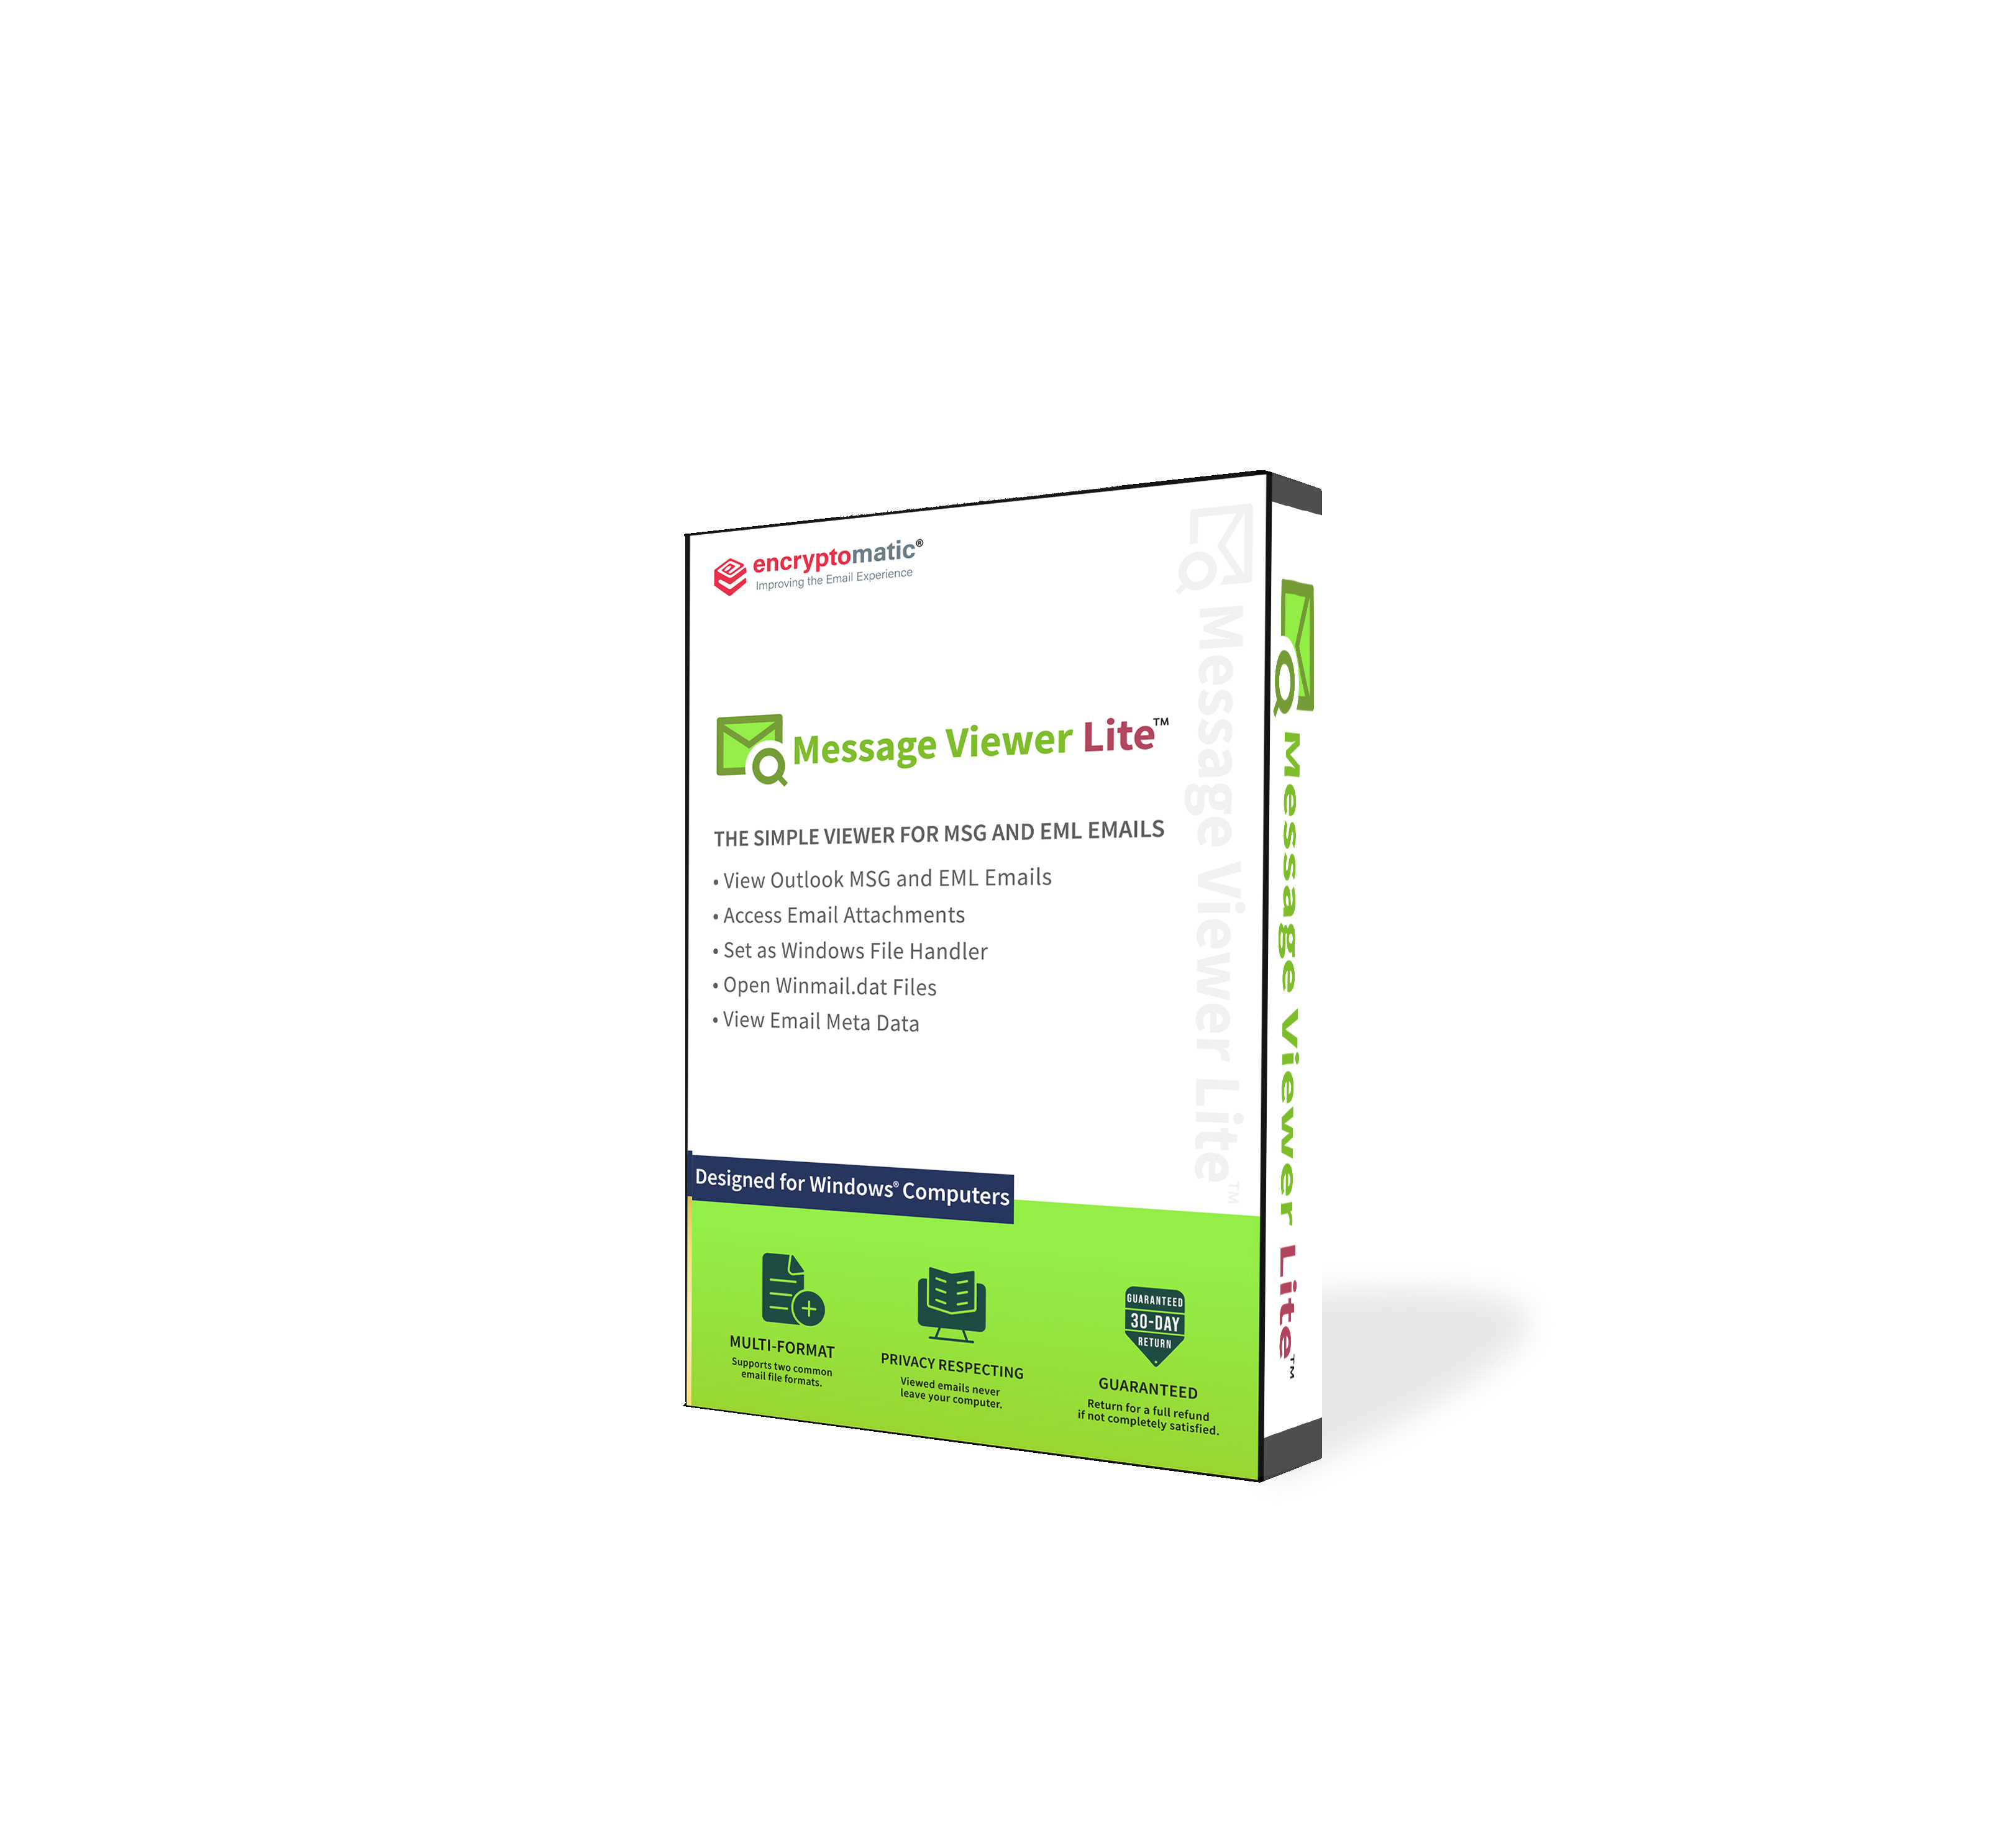 MessageViewer Lite software box.